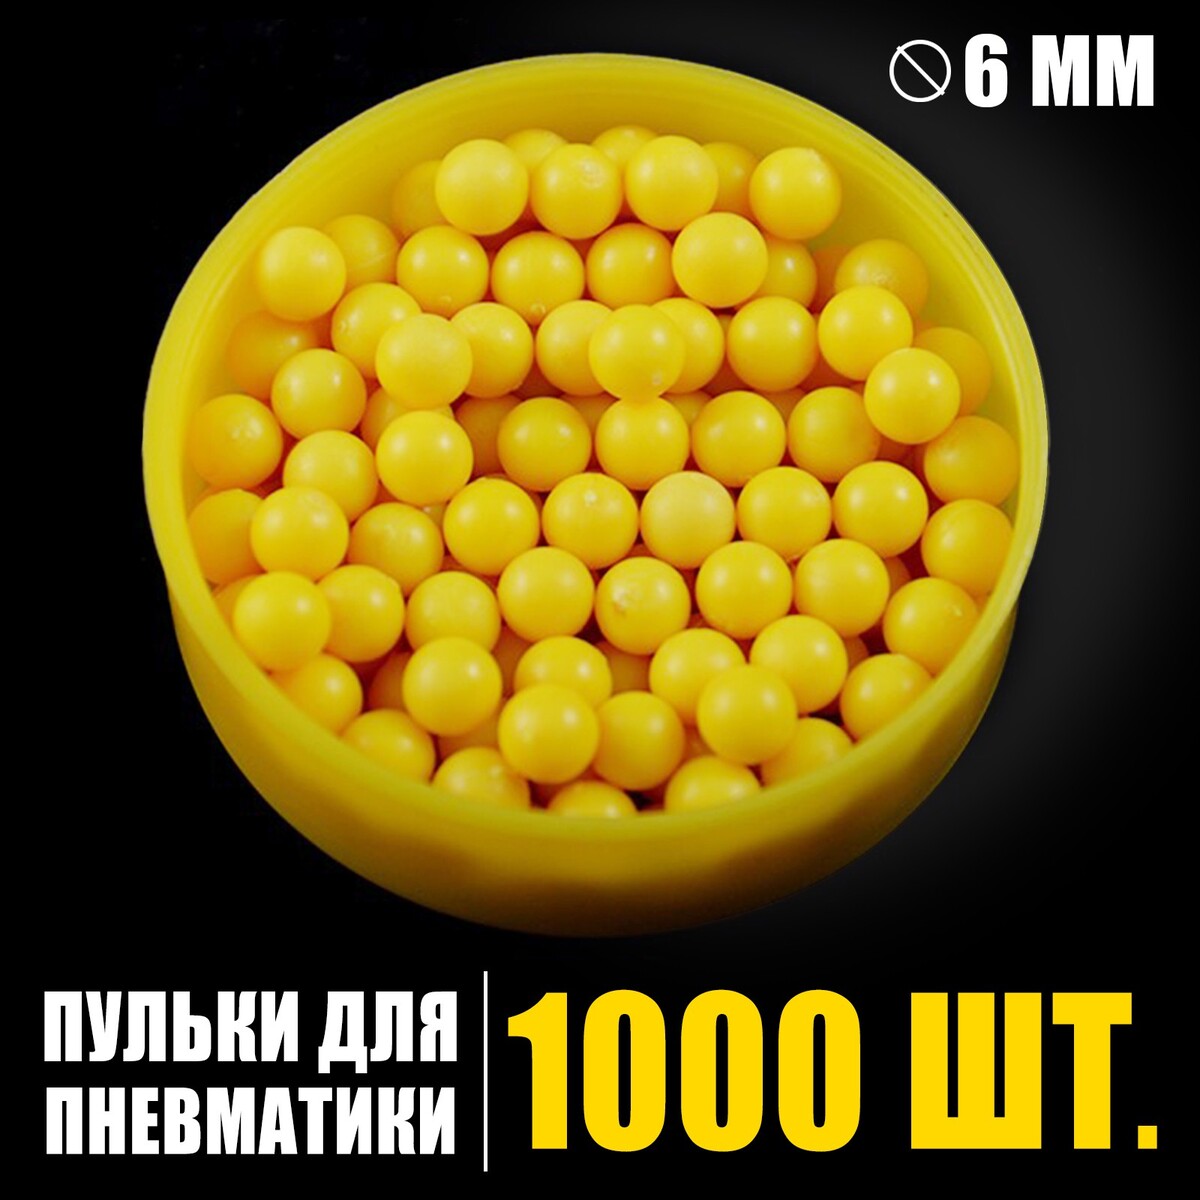 Пульки 6 мм в пакете, 1000 шт., цвет желтый пульки пластмассовые в банке 1000 штук